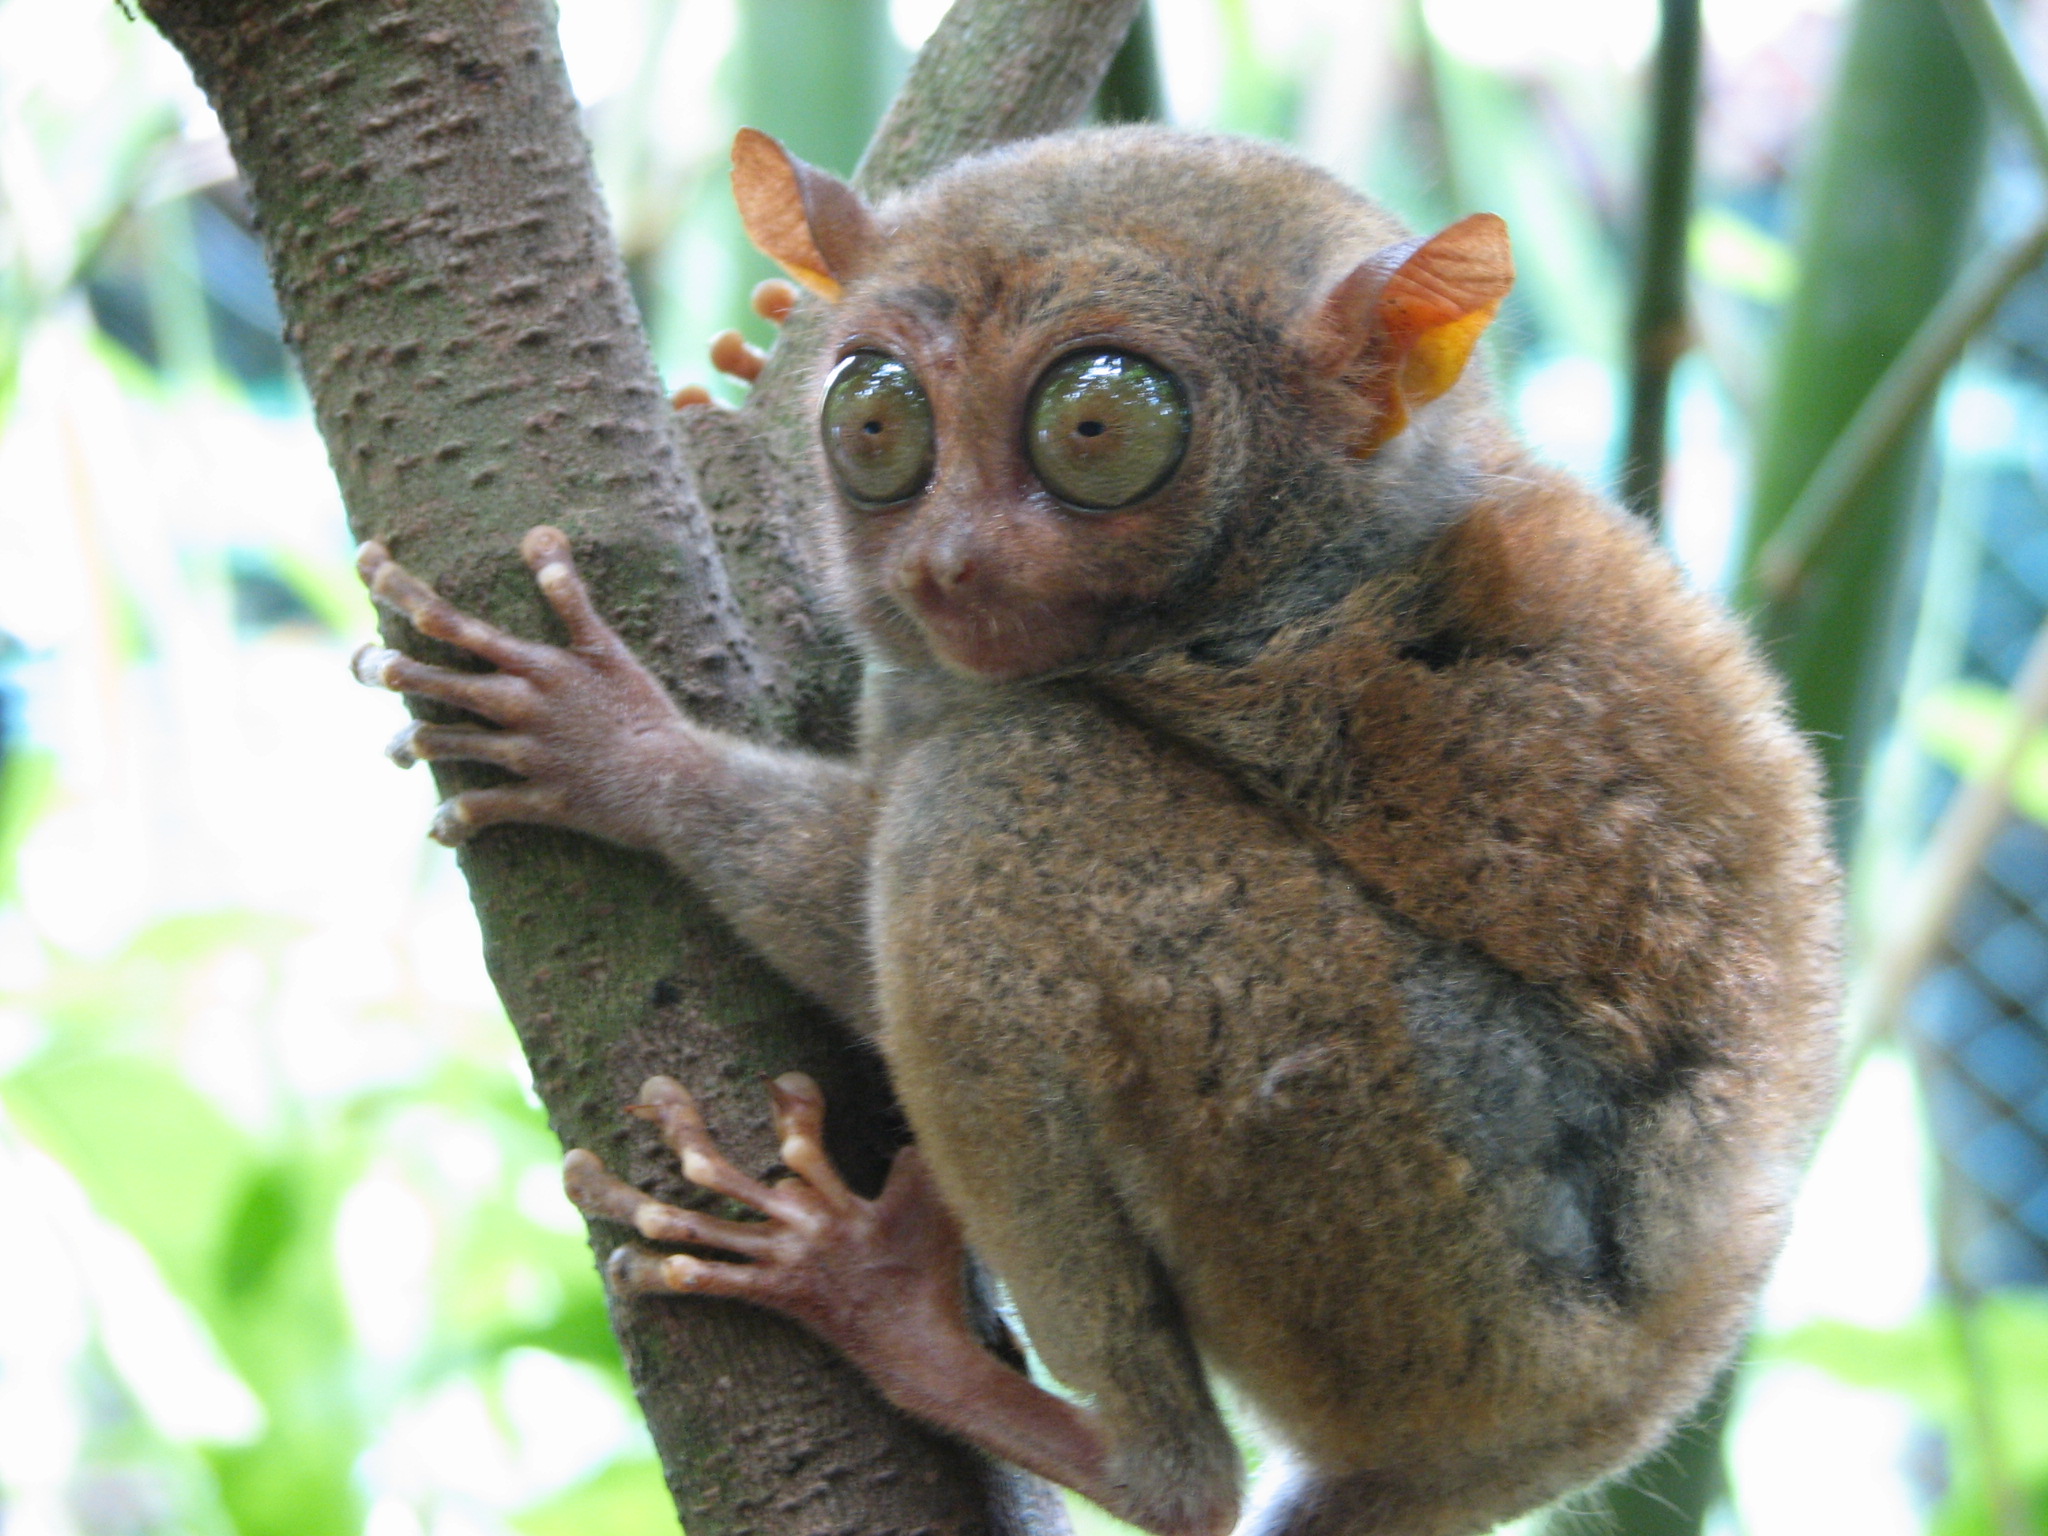 Philippine tarsier by mtoz